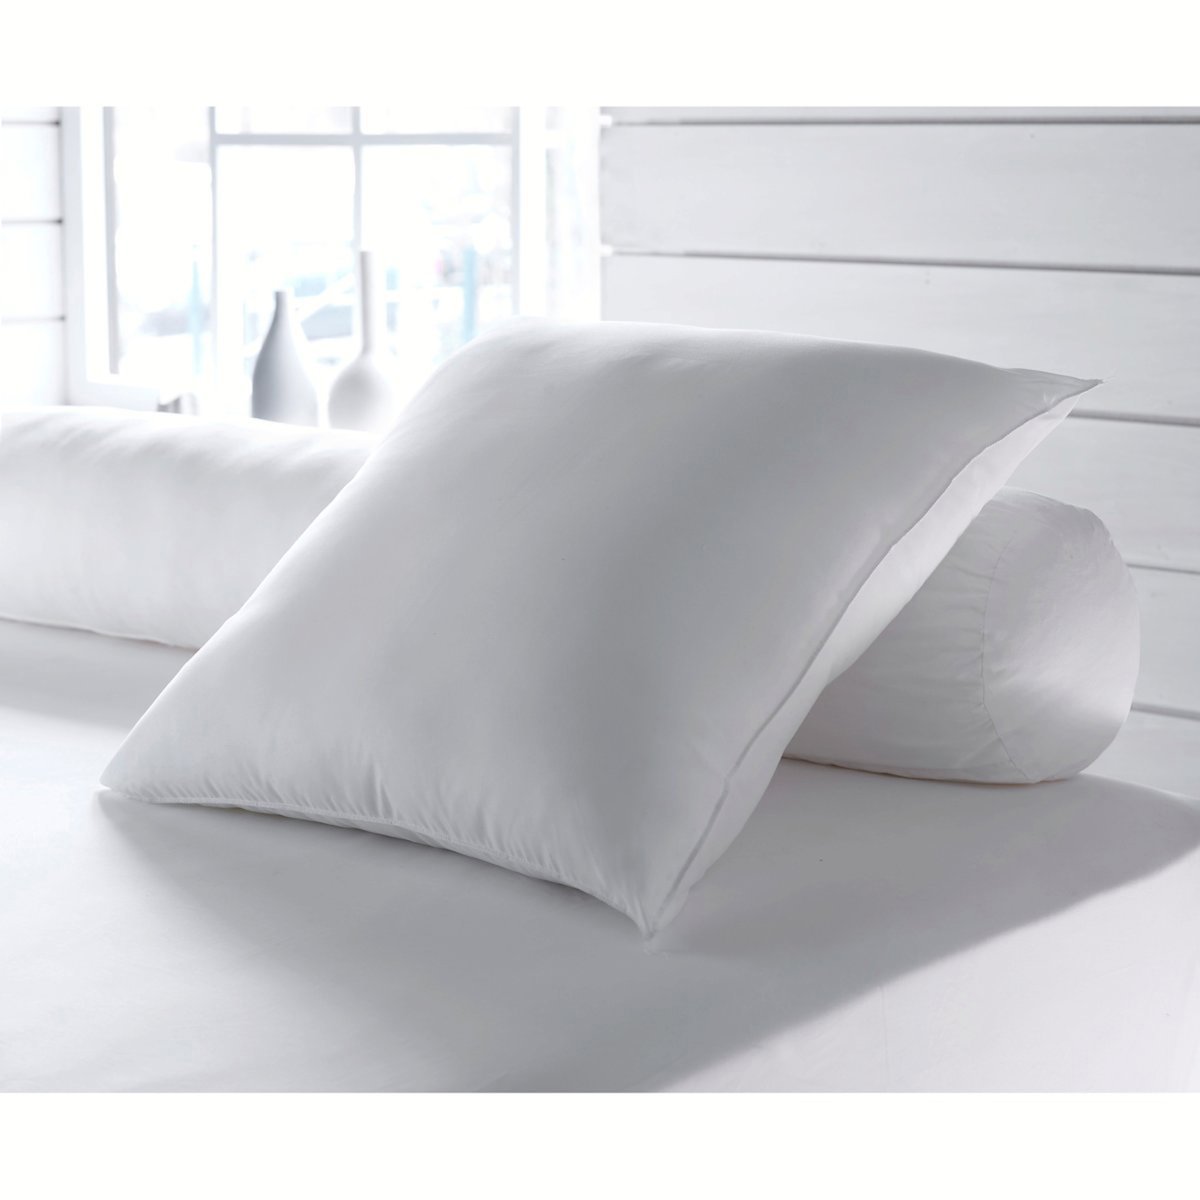 Одеяло La Redoute Экологичное с обработкой против клещей Proneem высокого качества 260 x 240 см белый, размер 260 x 240 см - фото 2